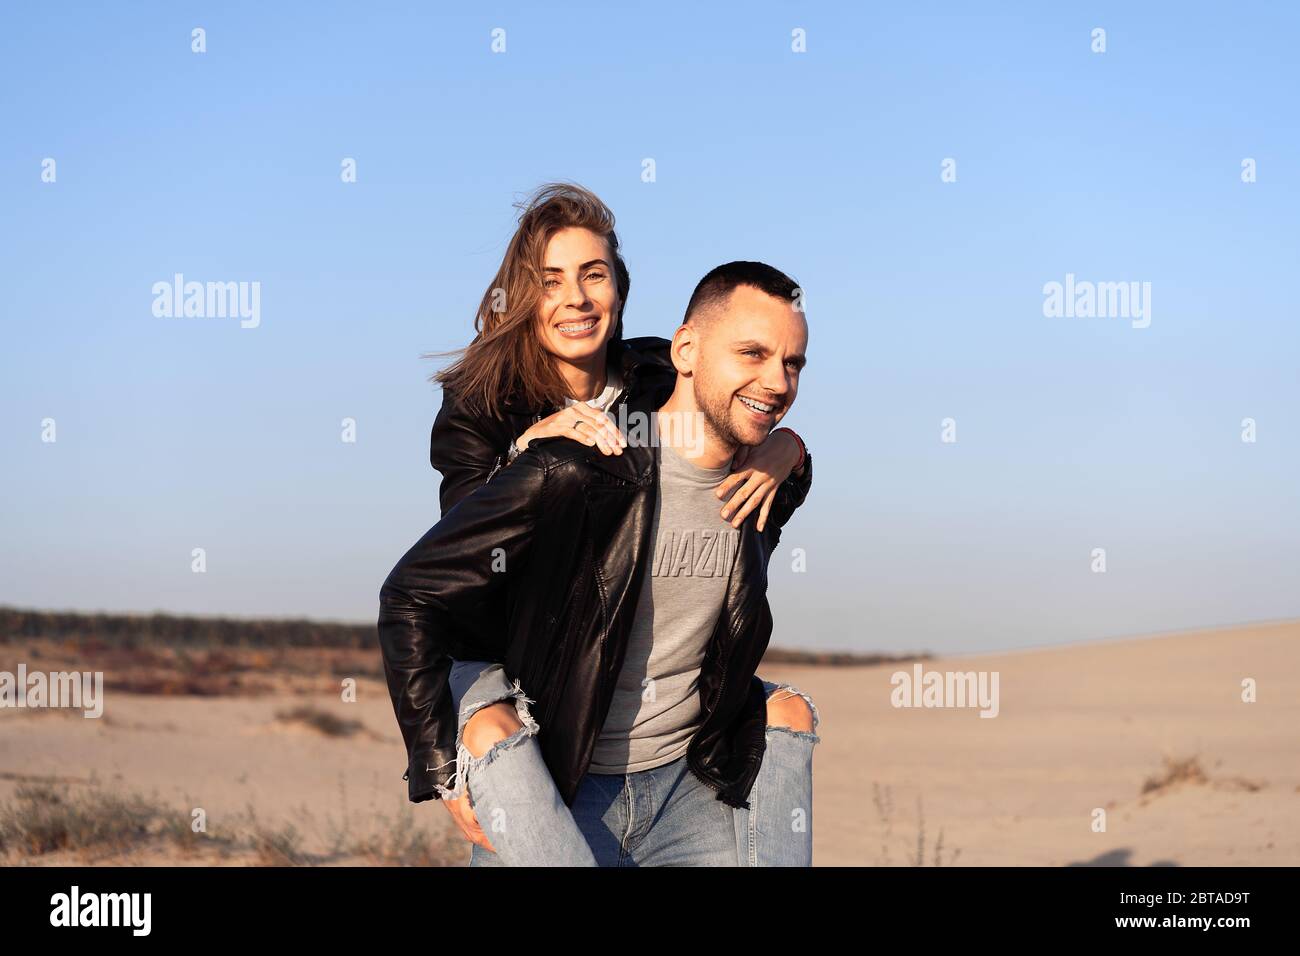 Joyeux et mignon adorable adulte couple veste en cuir et jeans homme avec femme petite amie sur le dos piggy, jouer, rire, sourire et sauter sur le coucher du soleil A. Banque D'Images